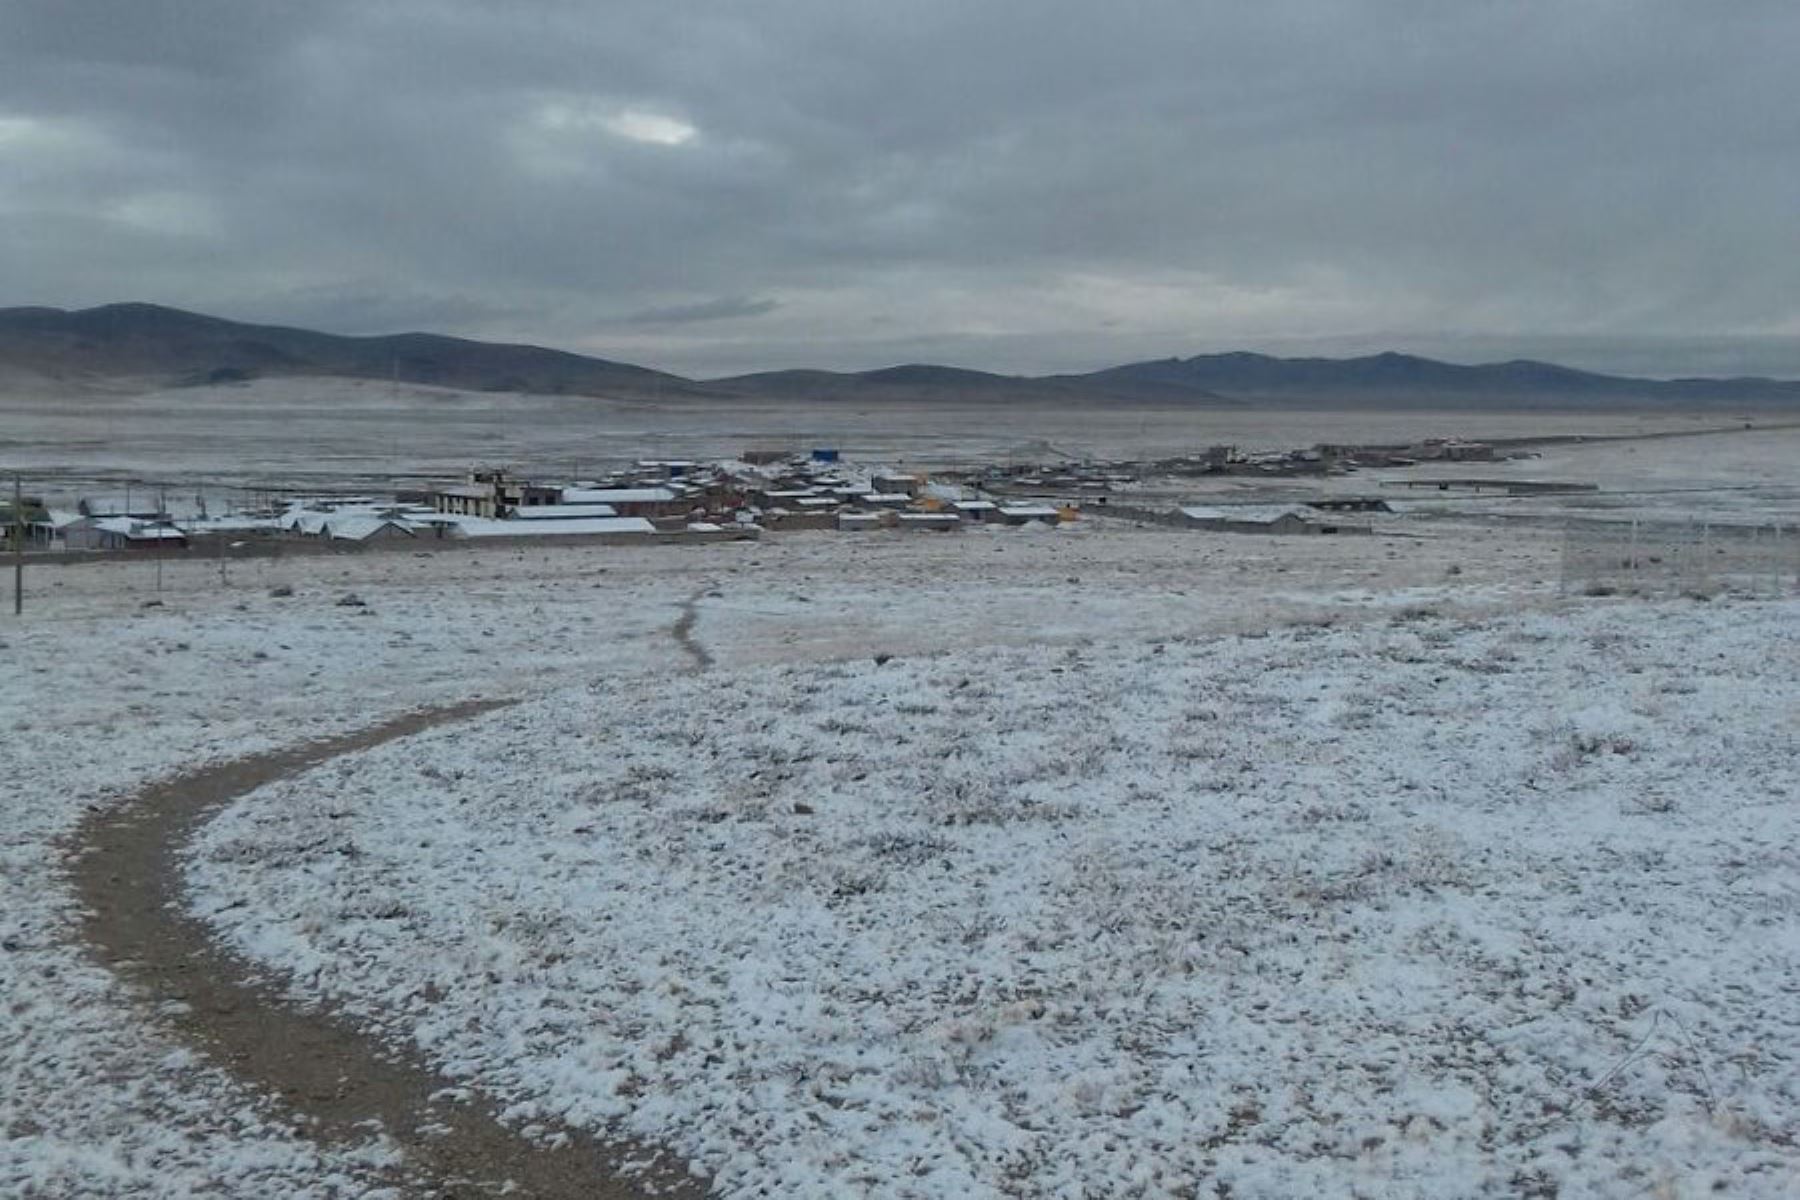 La nevada cubrió casi todo el terreno en el centro poblado de Imata, situado en el distrito de San Antonio de Chuca, provincia de Caylloma, en la región Arequipa. Foto: Senamhi